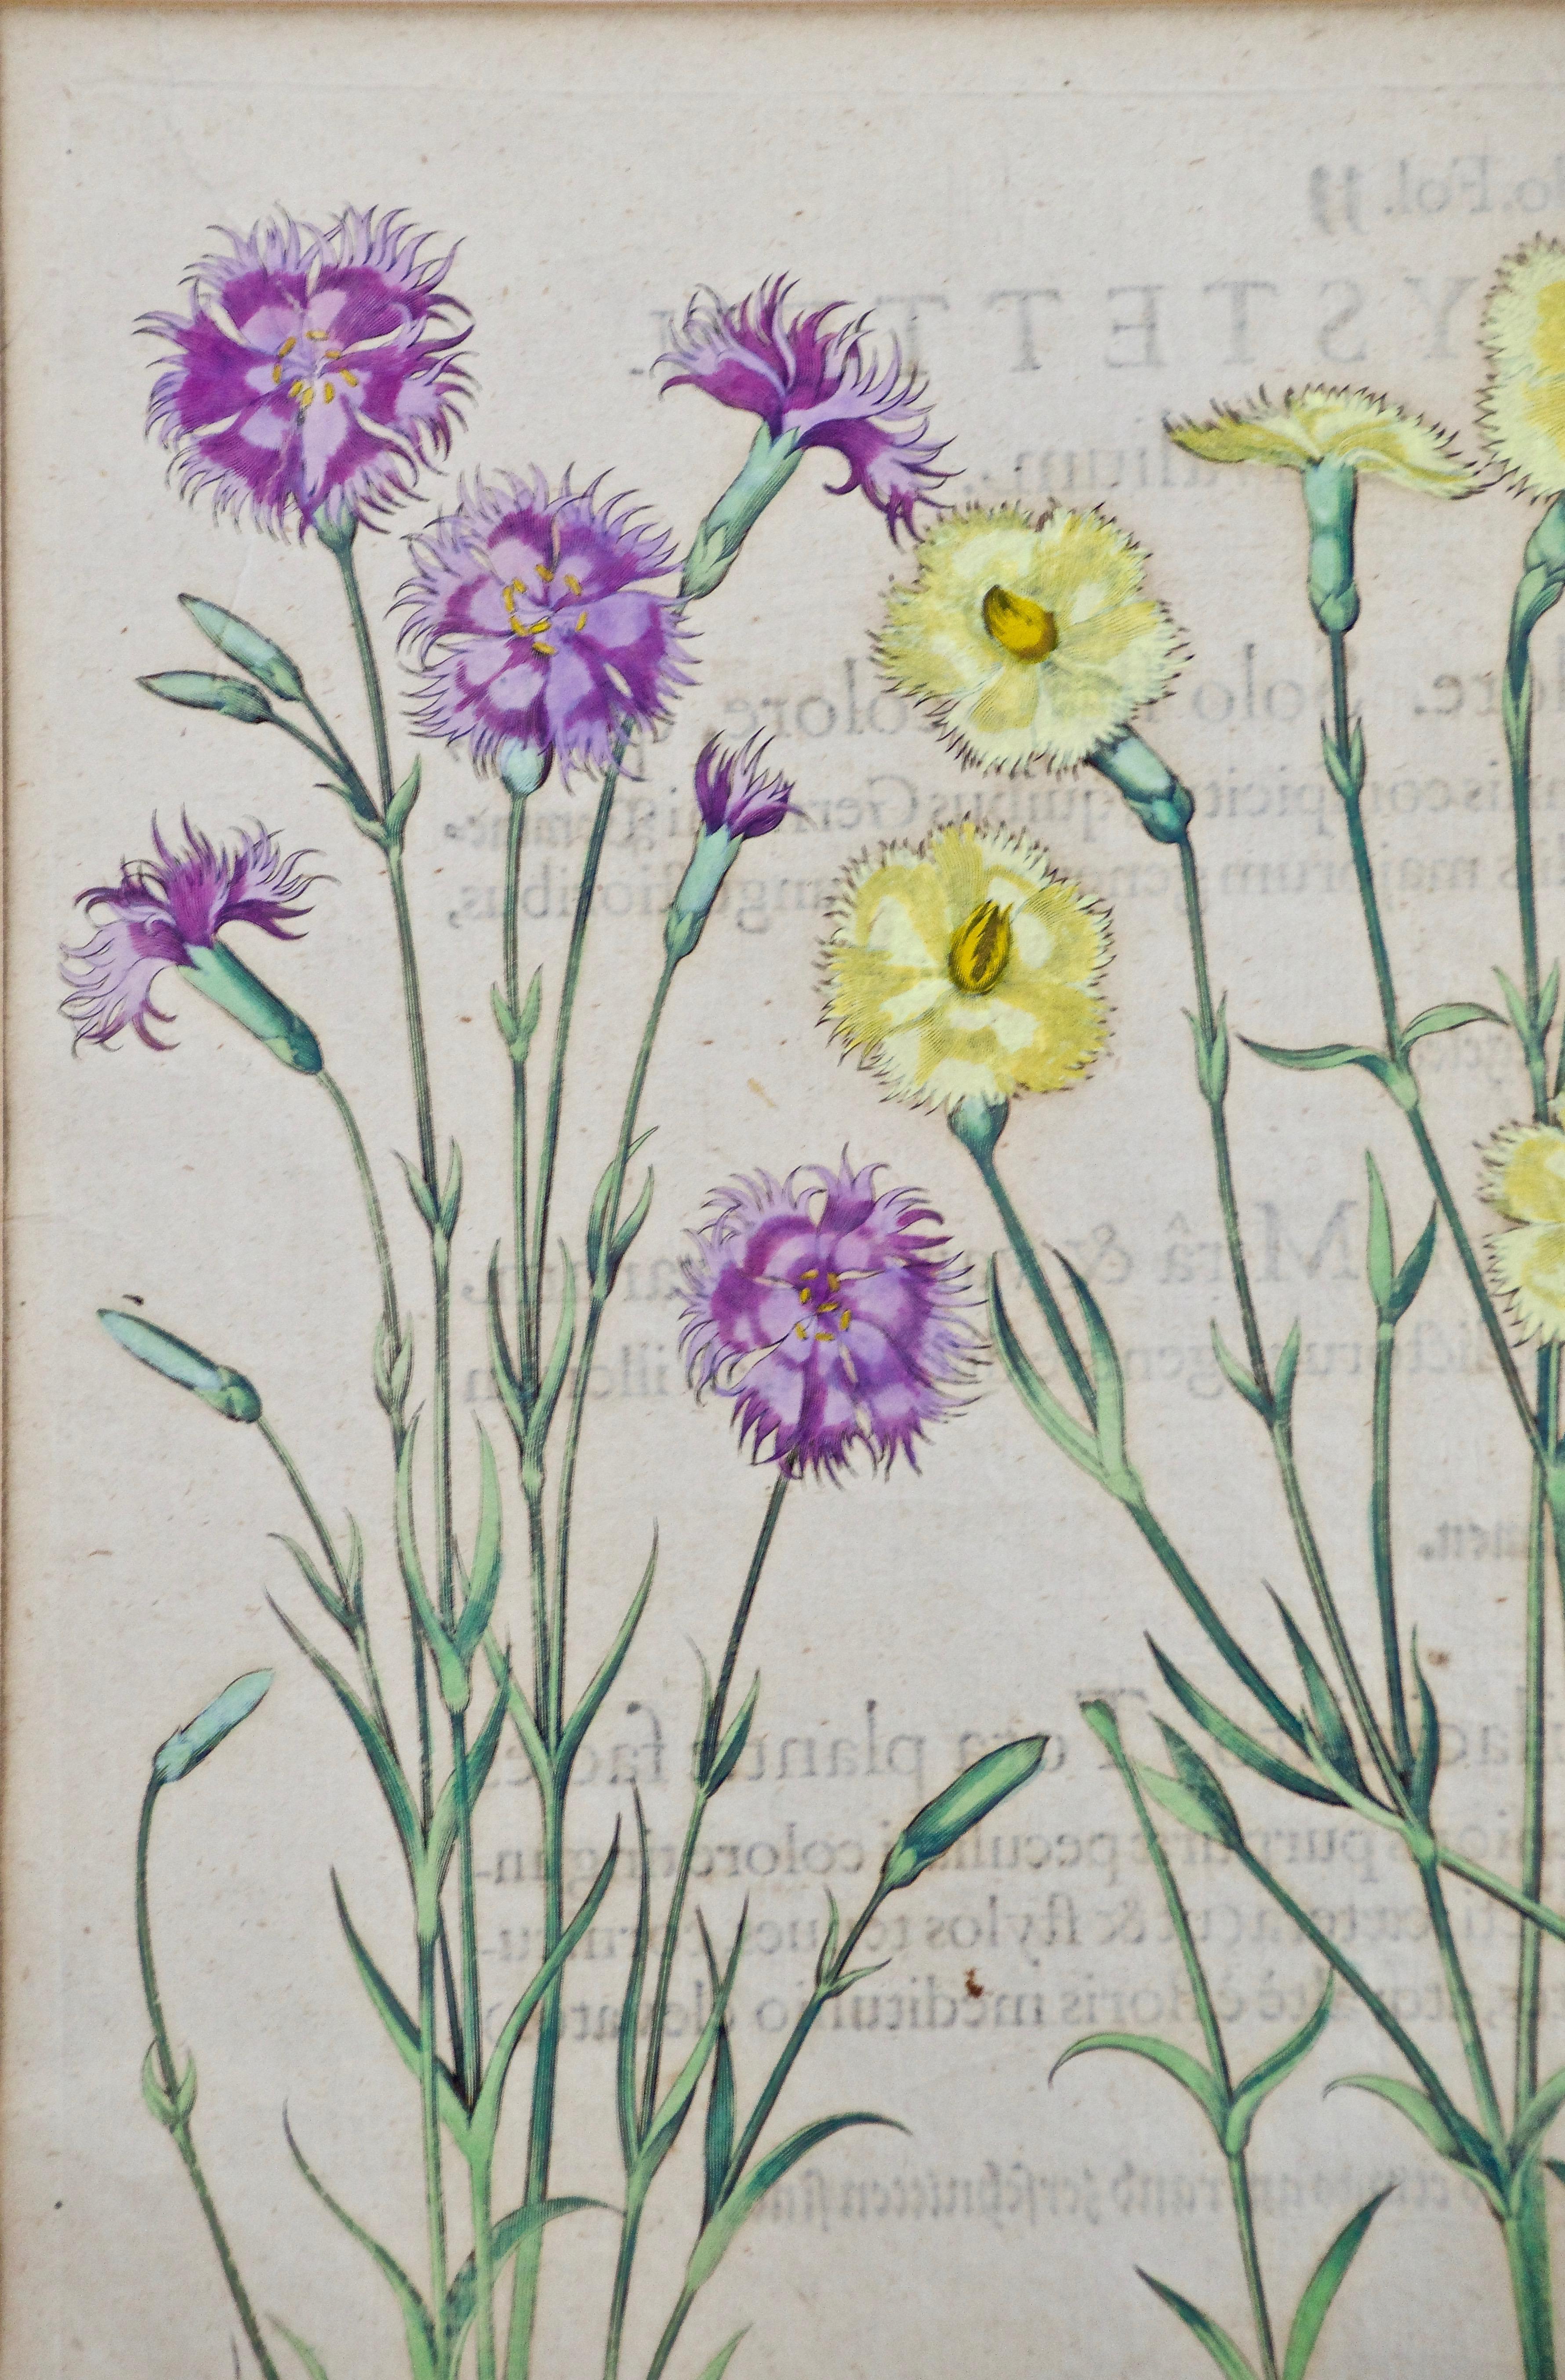 Besler Handkolorierte botanische Gravur von rosa und rosa Blumen im Landhausstil – Print von Basilius Besler